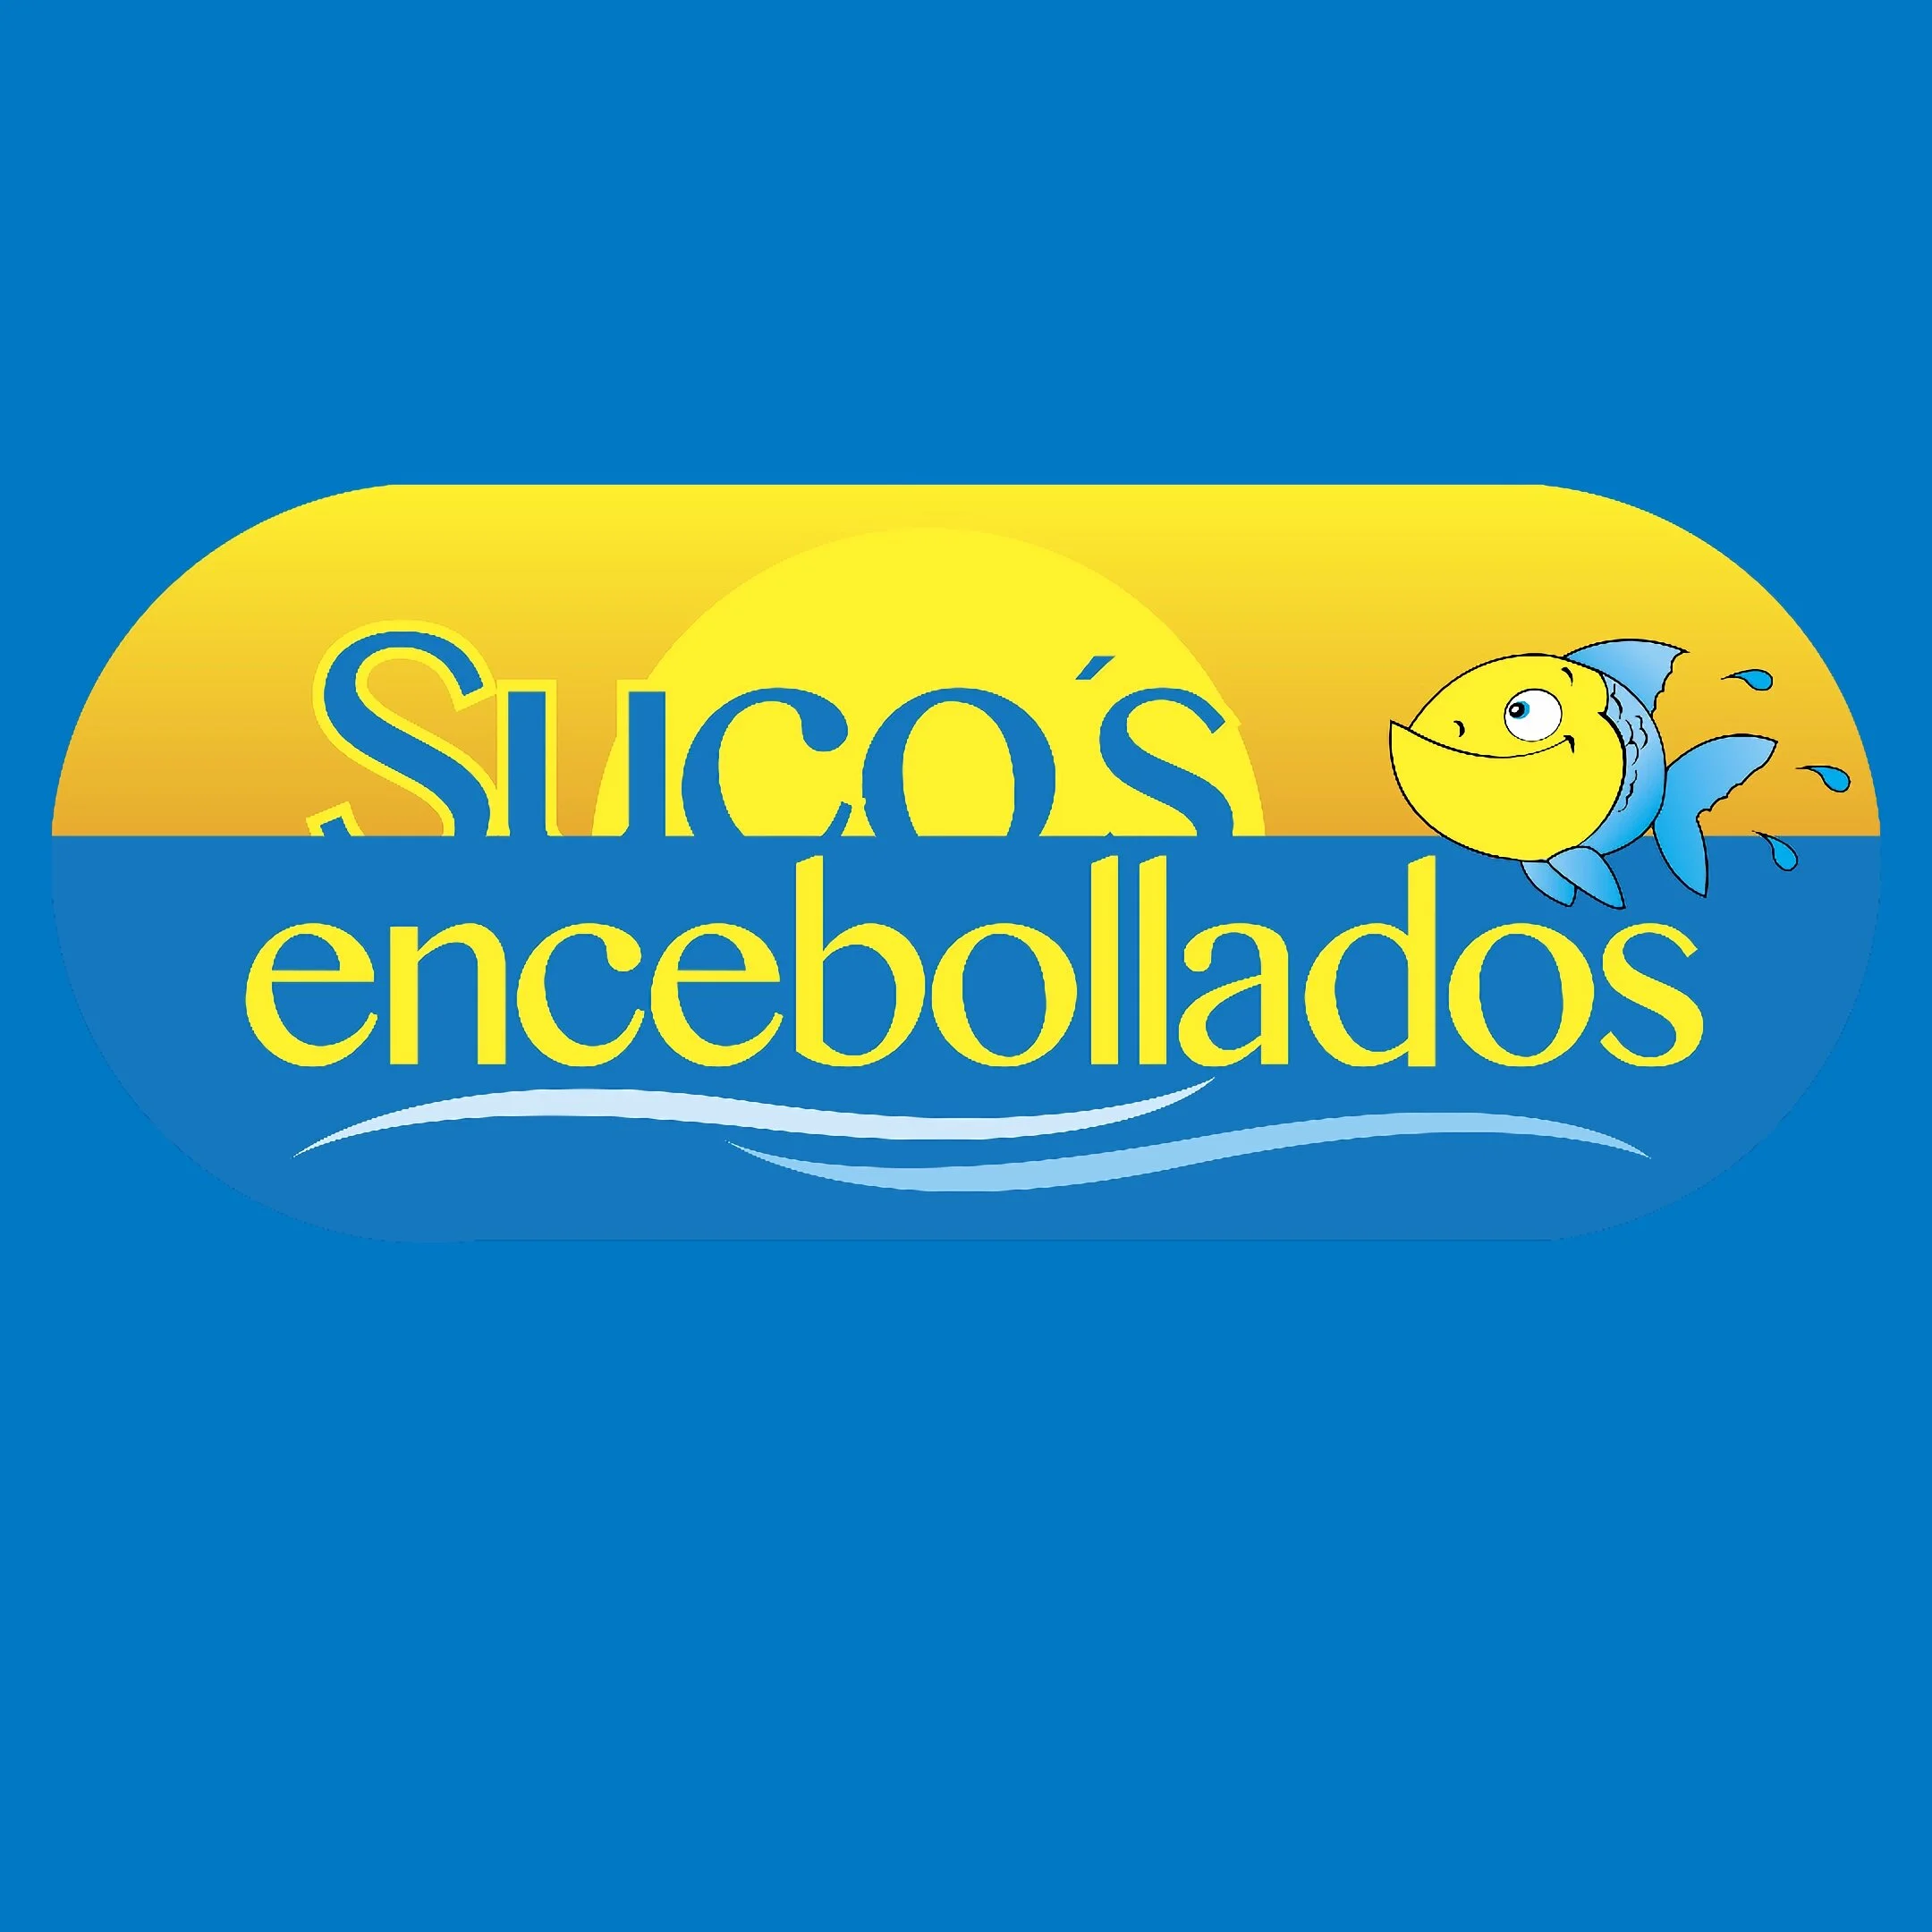 Restaurantes-sucos-encebollados-pinchos-y-asados-sucursal-1-18628